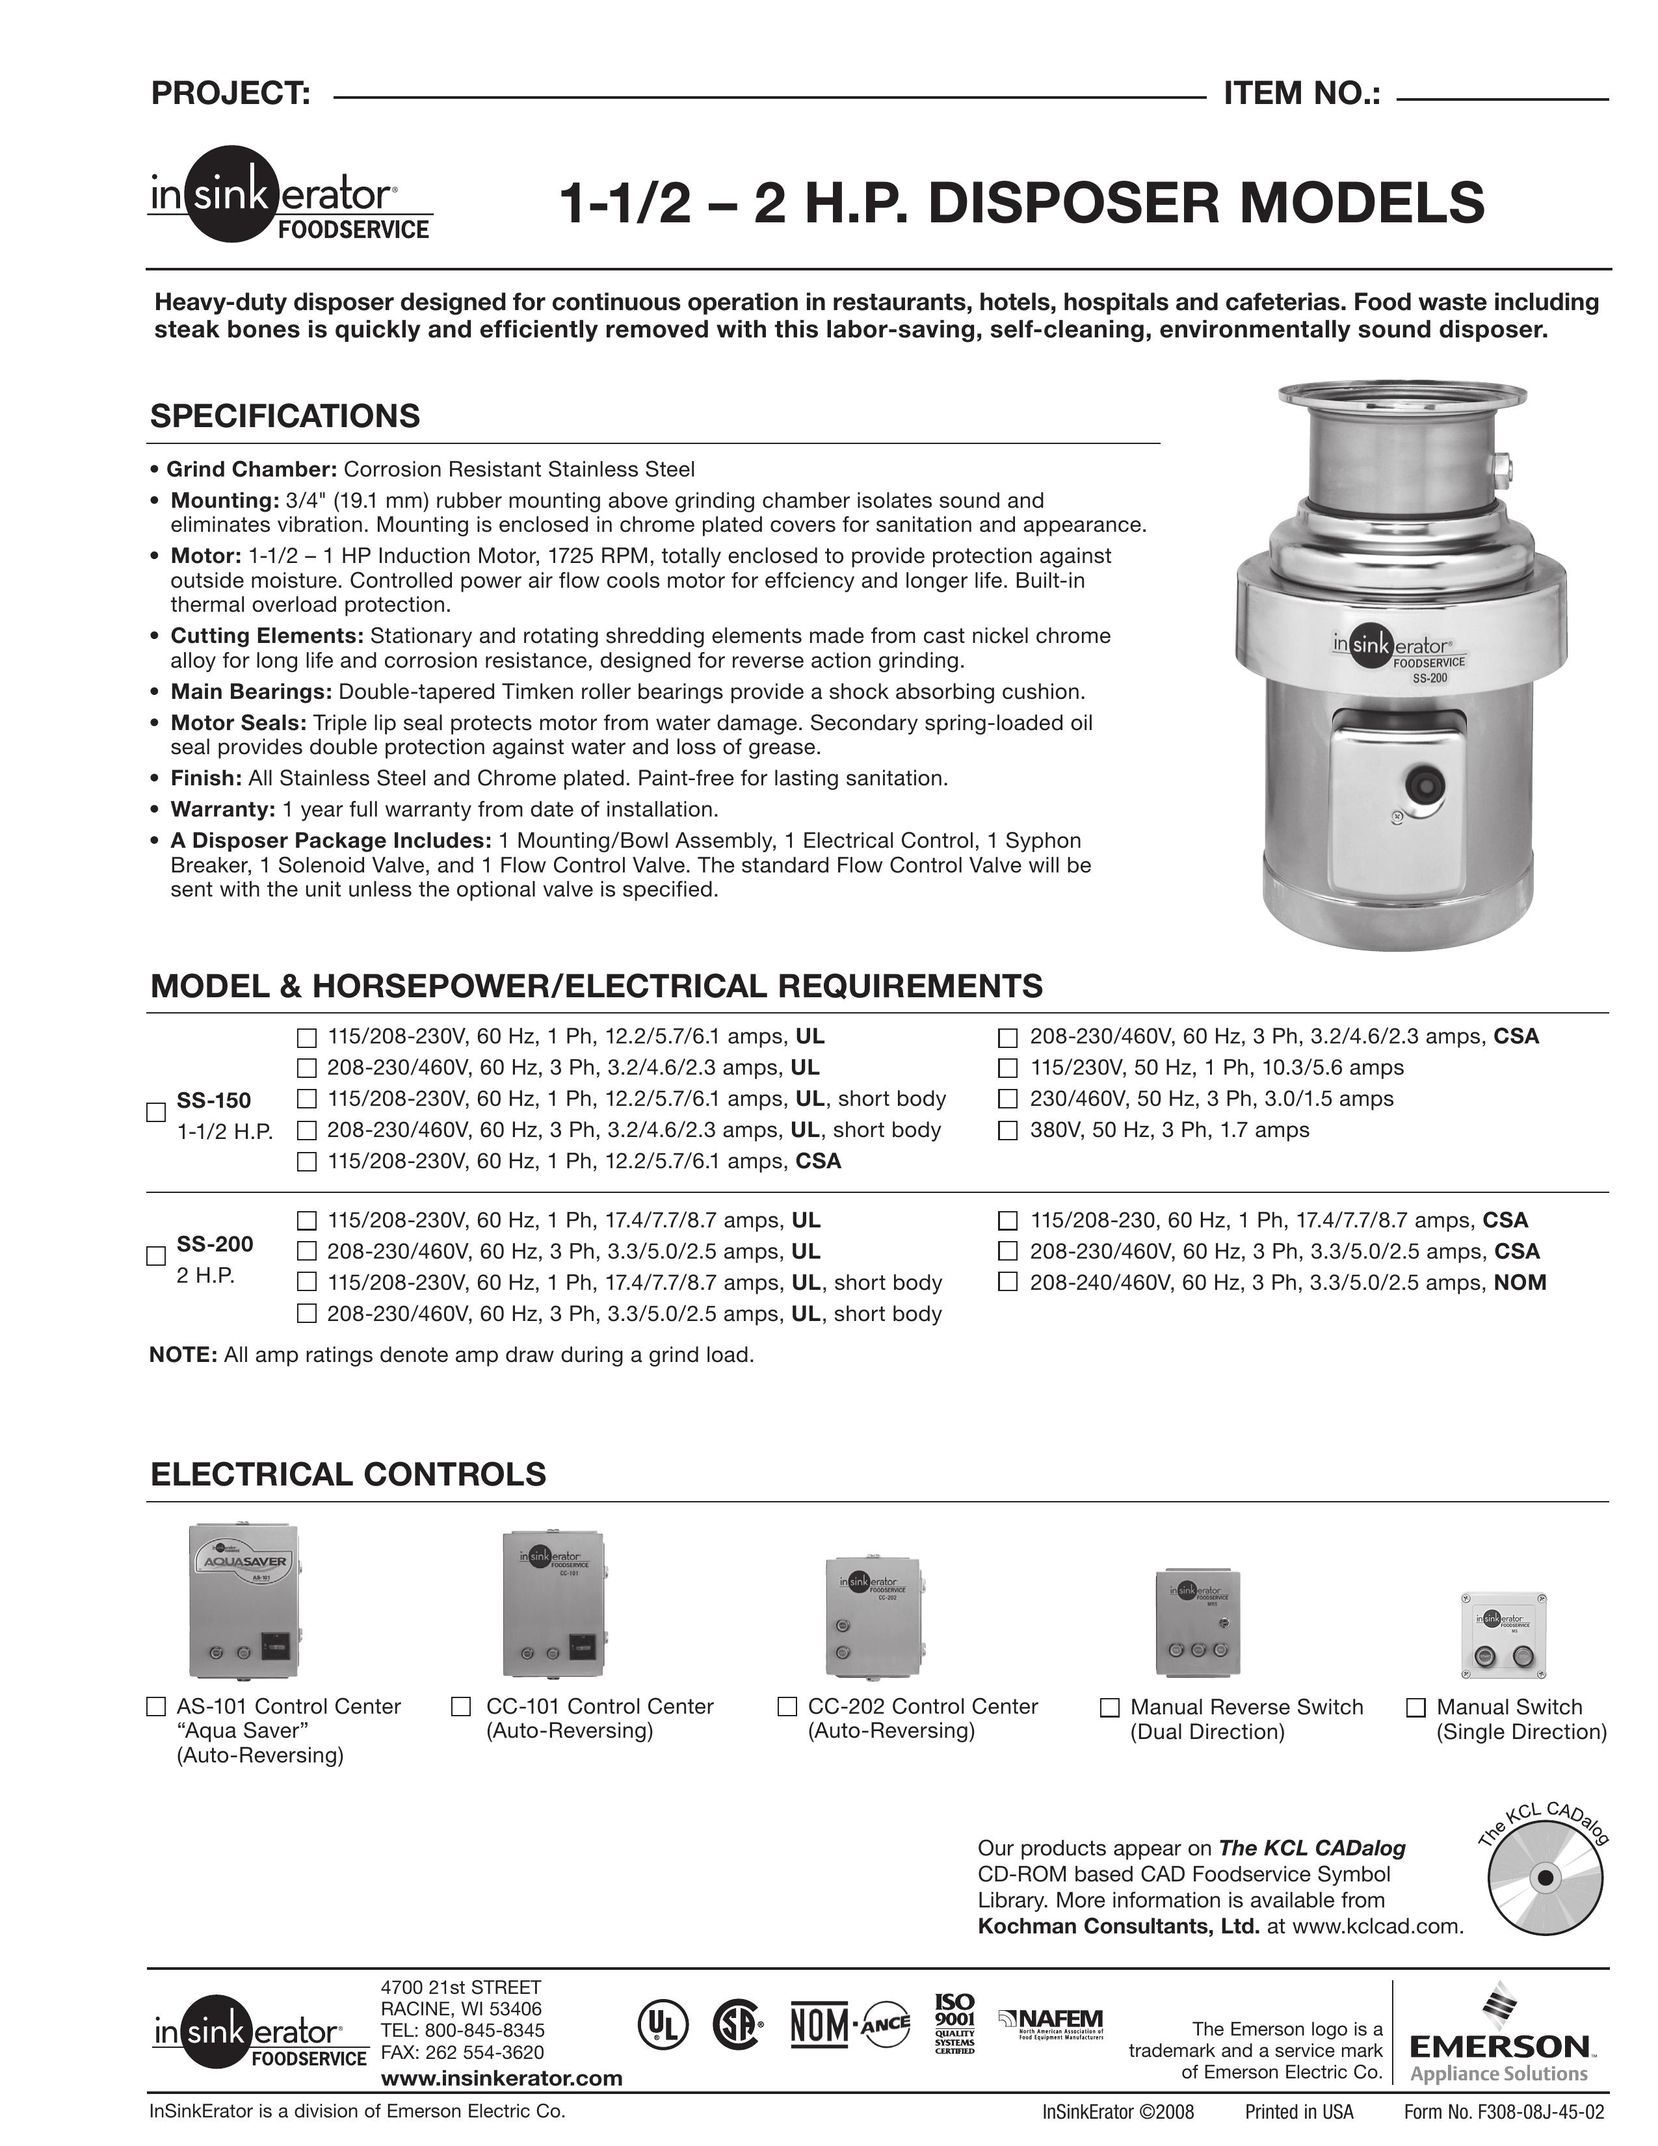 InSinkErator SS150 to SS200 Garbage Disposal User Manual